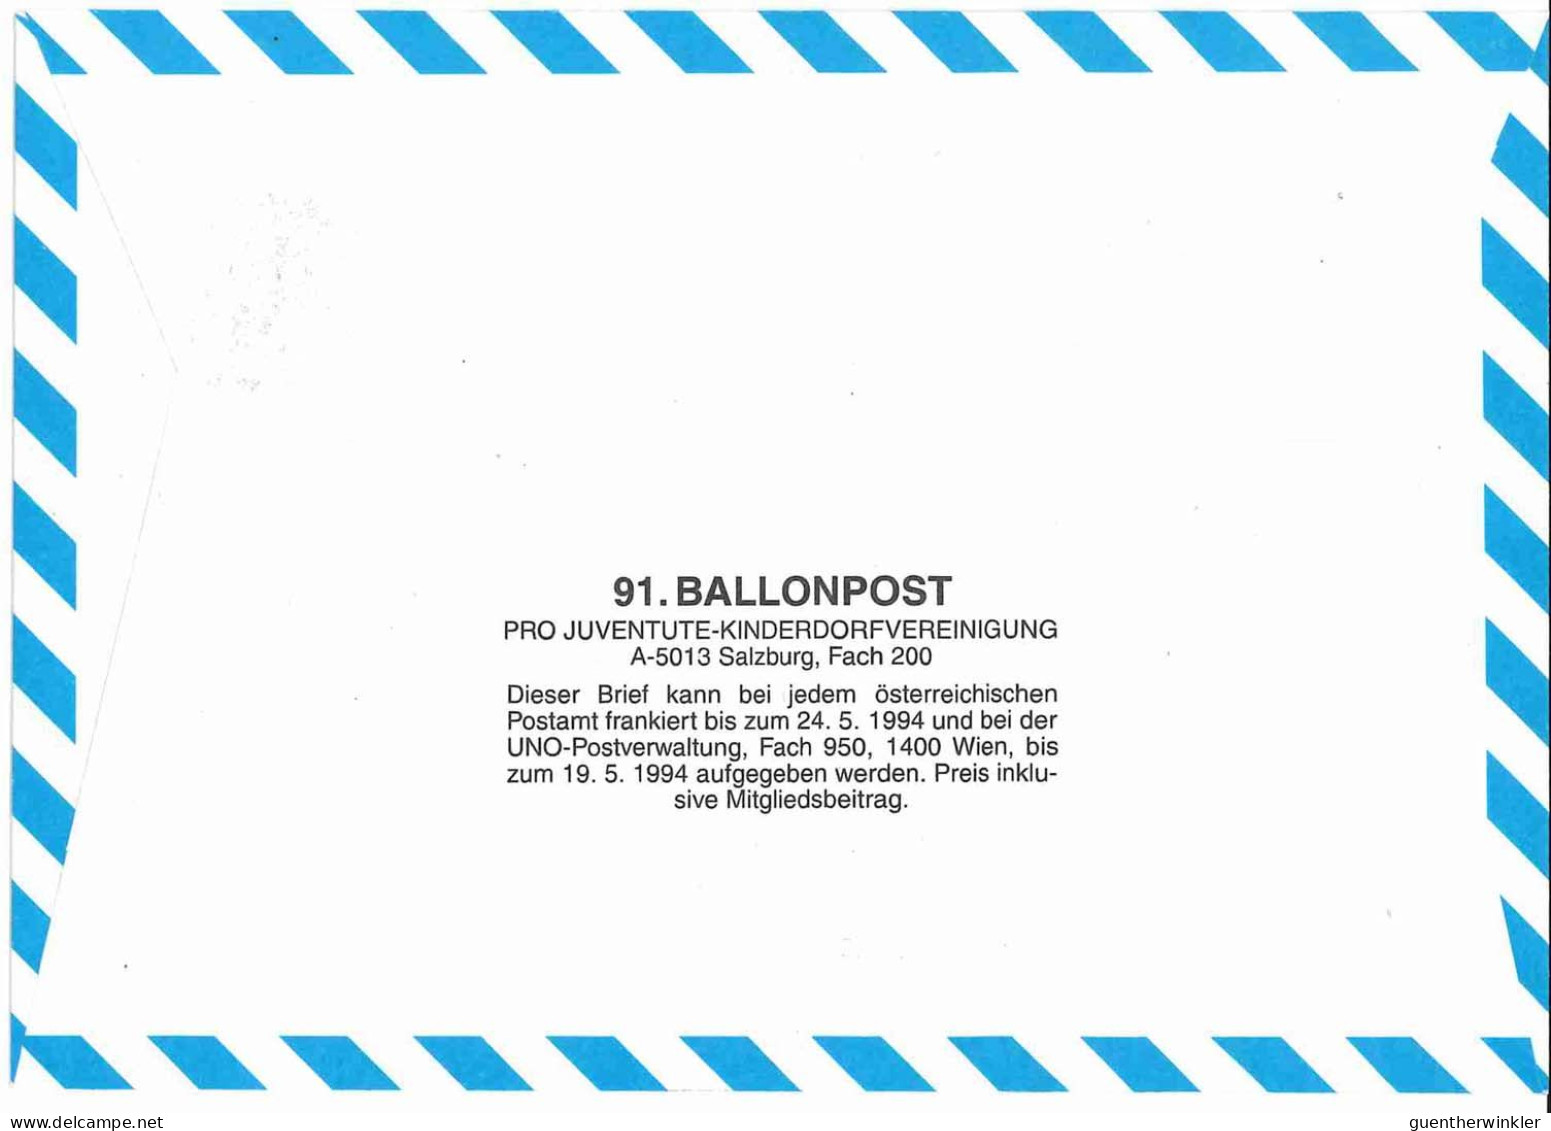 Regulärer Ballonpostflug Nr. 91a Der Pro Juventute [RBP91a] - Per Palloni